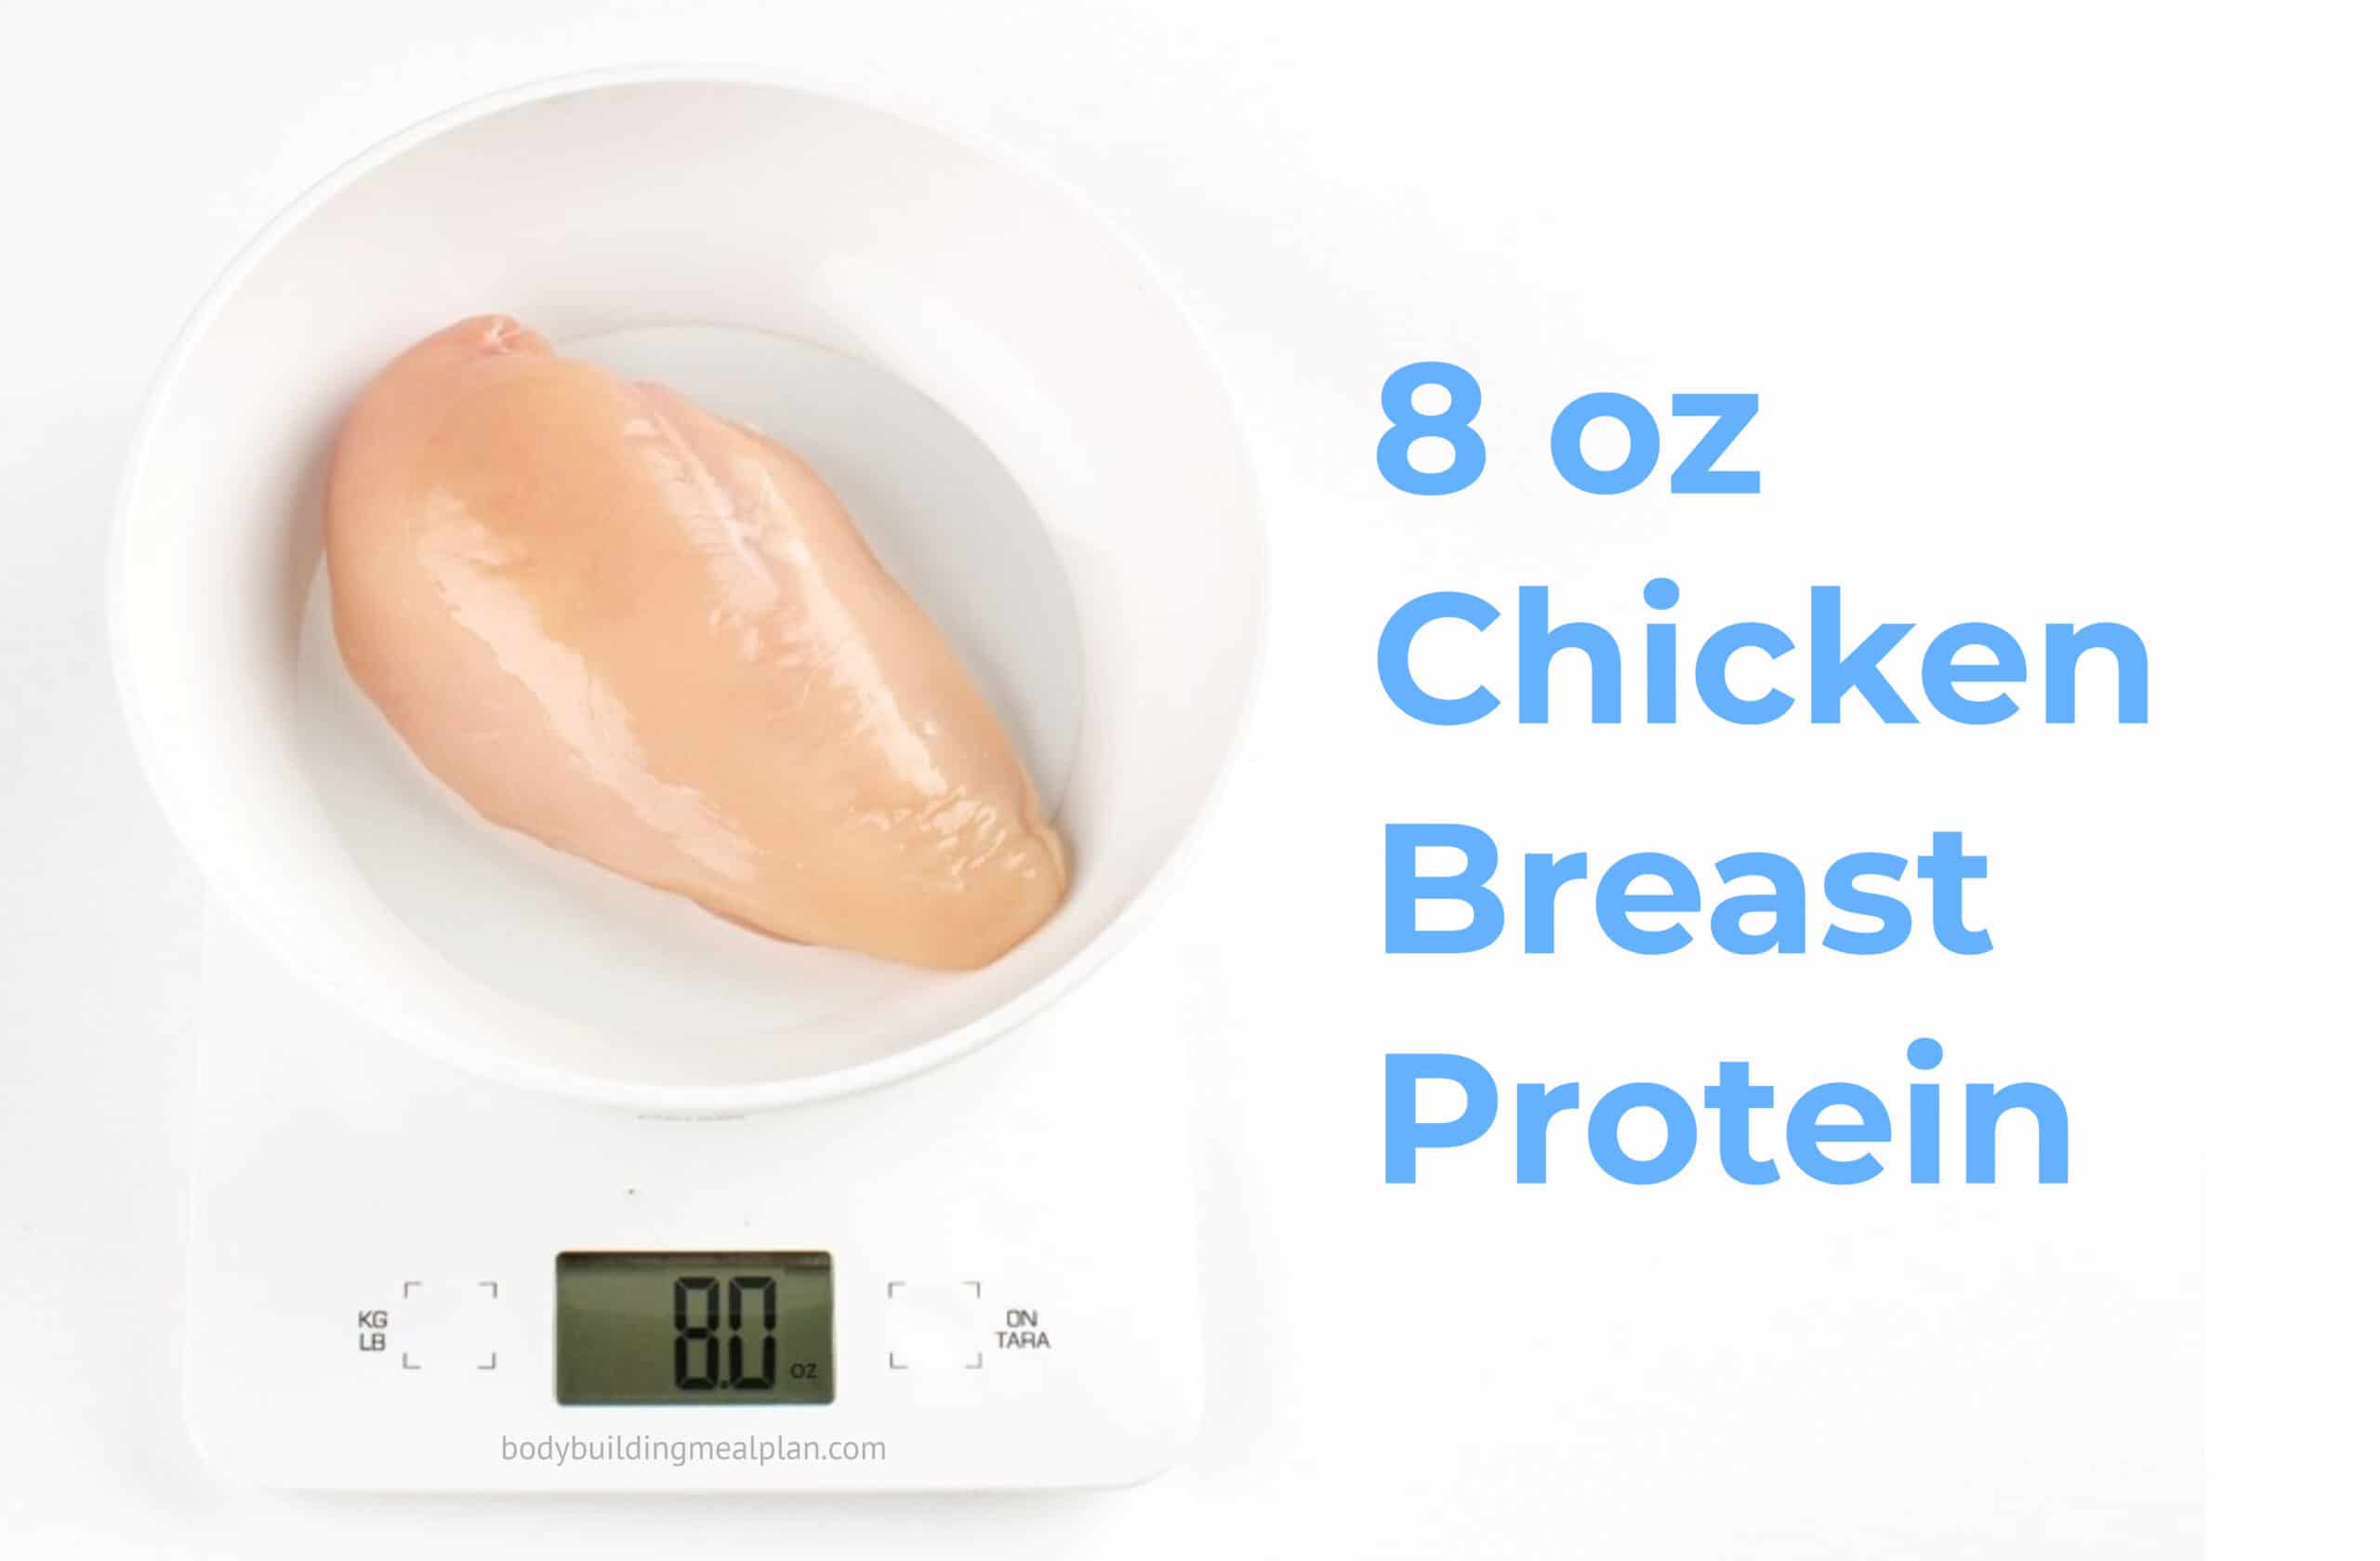 8 oz Chicken Breast Protein